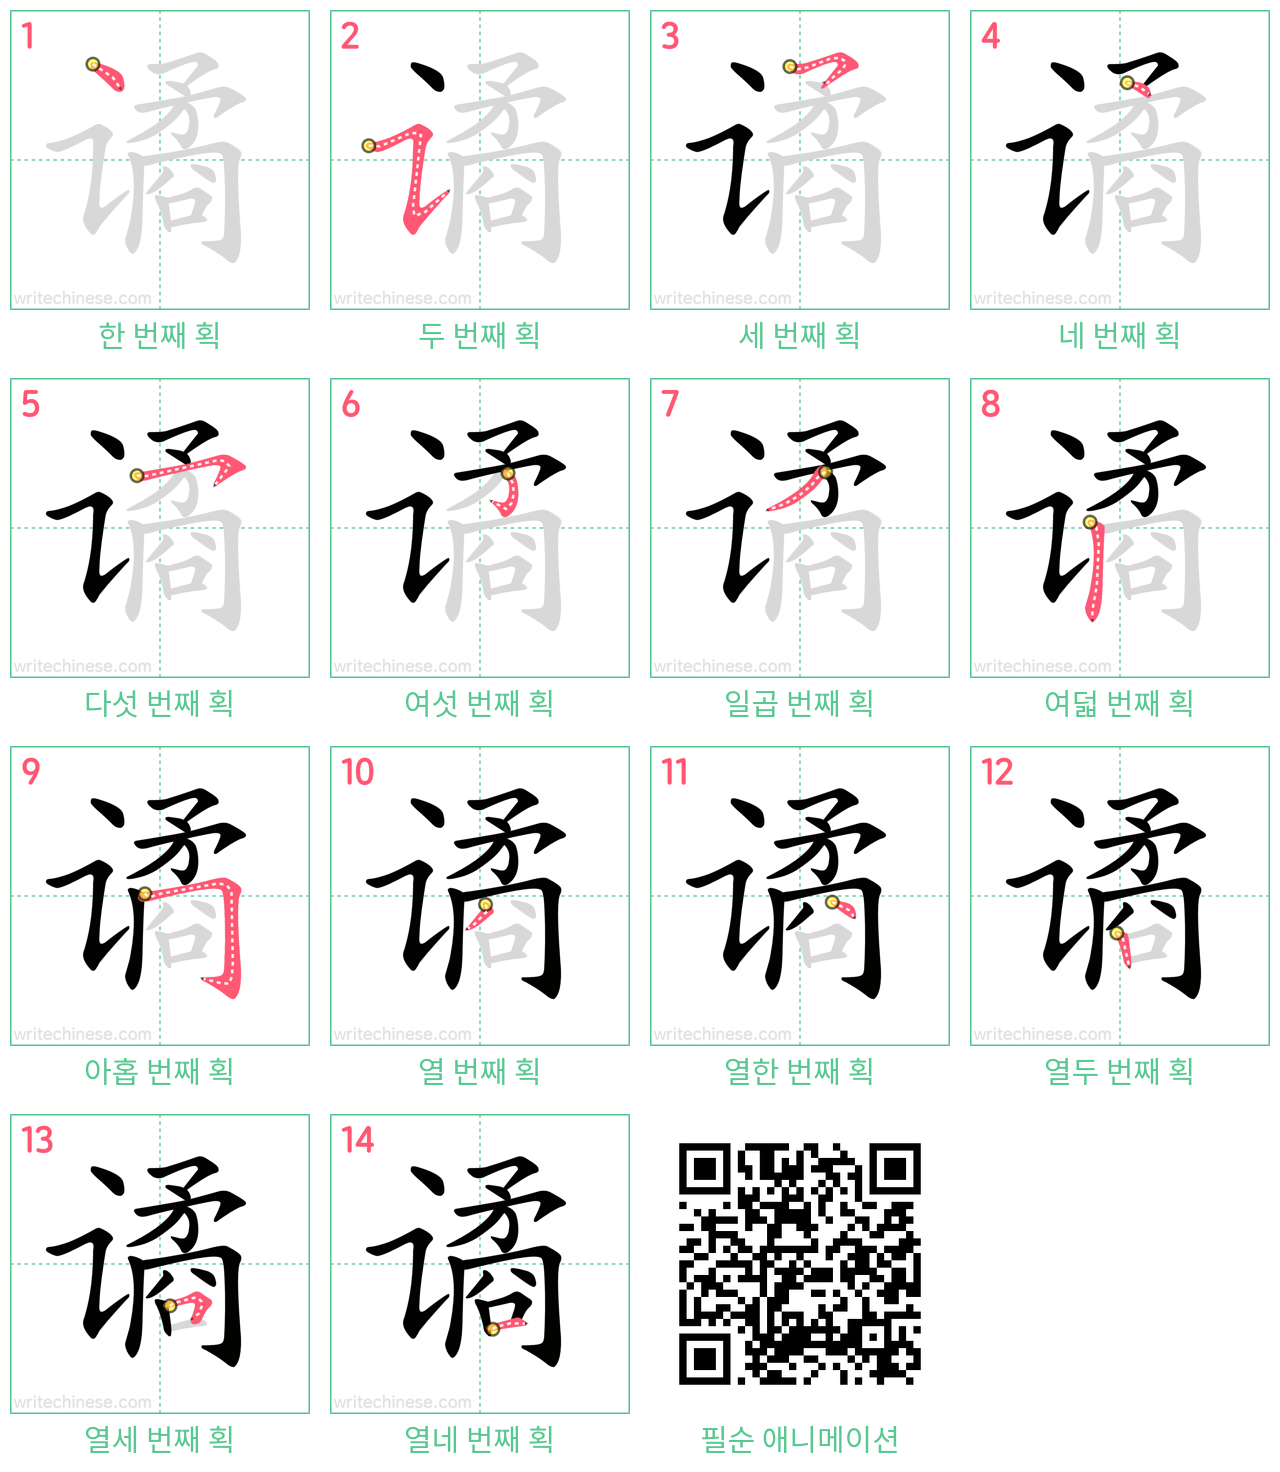 谲 step-by-step stroke order diagrams